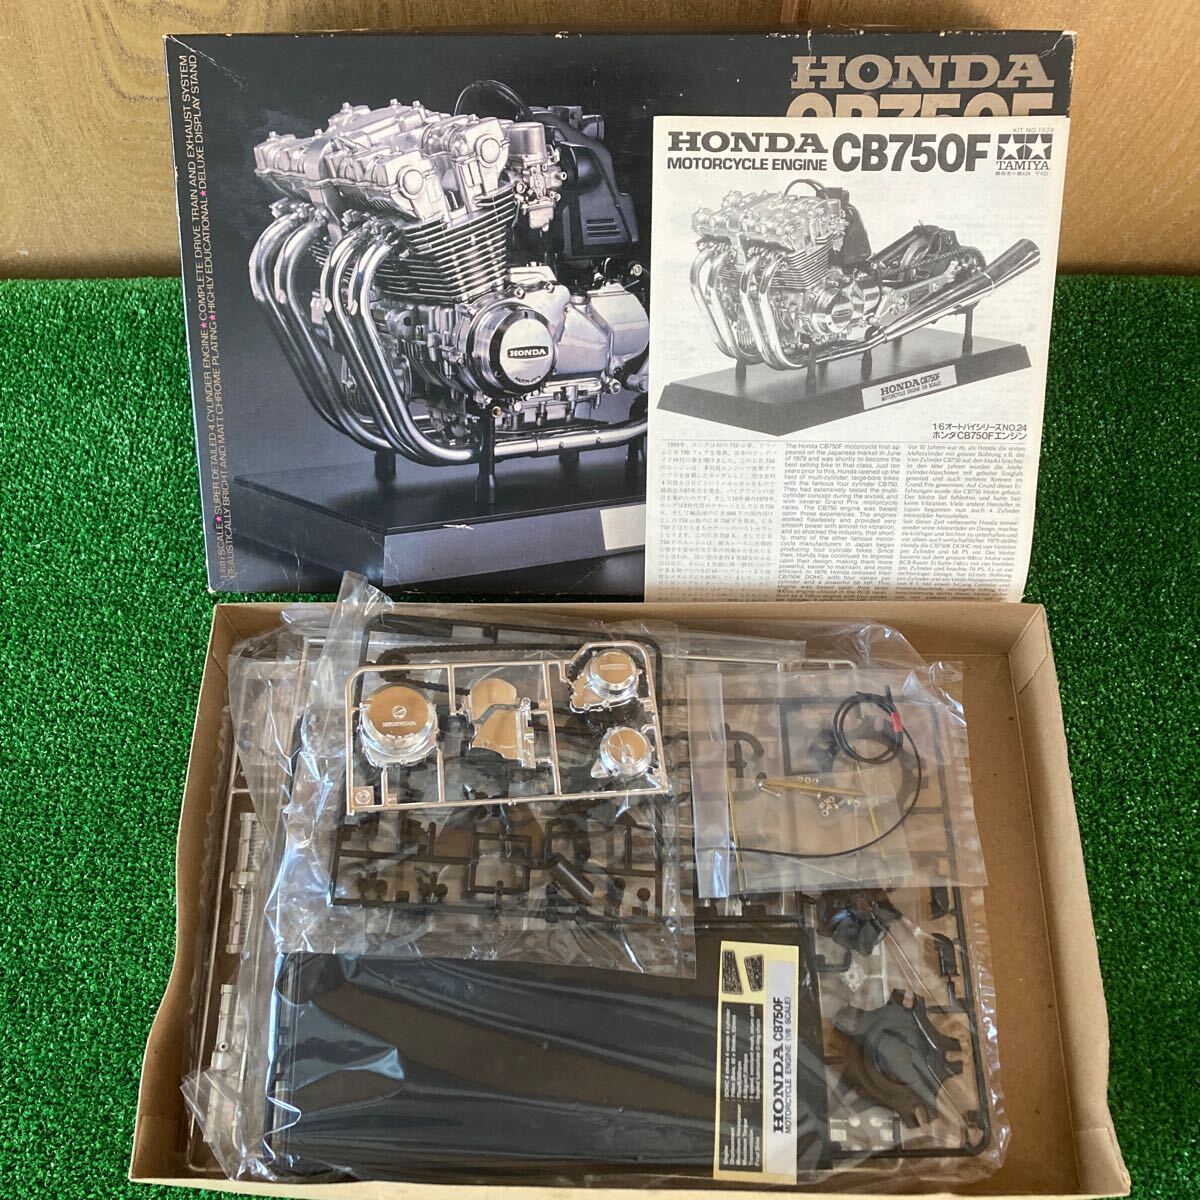 * Tamiya 1/6 [ Honda CB750F engine display kit ]